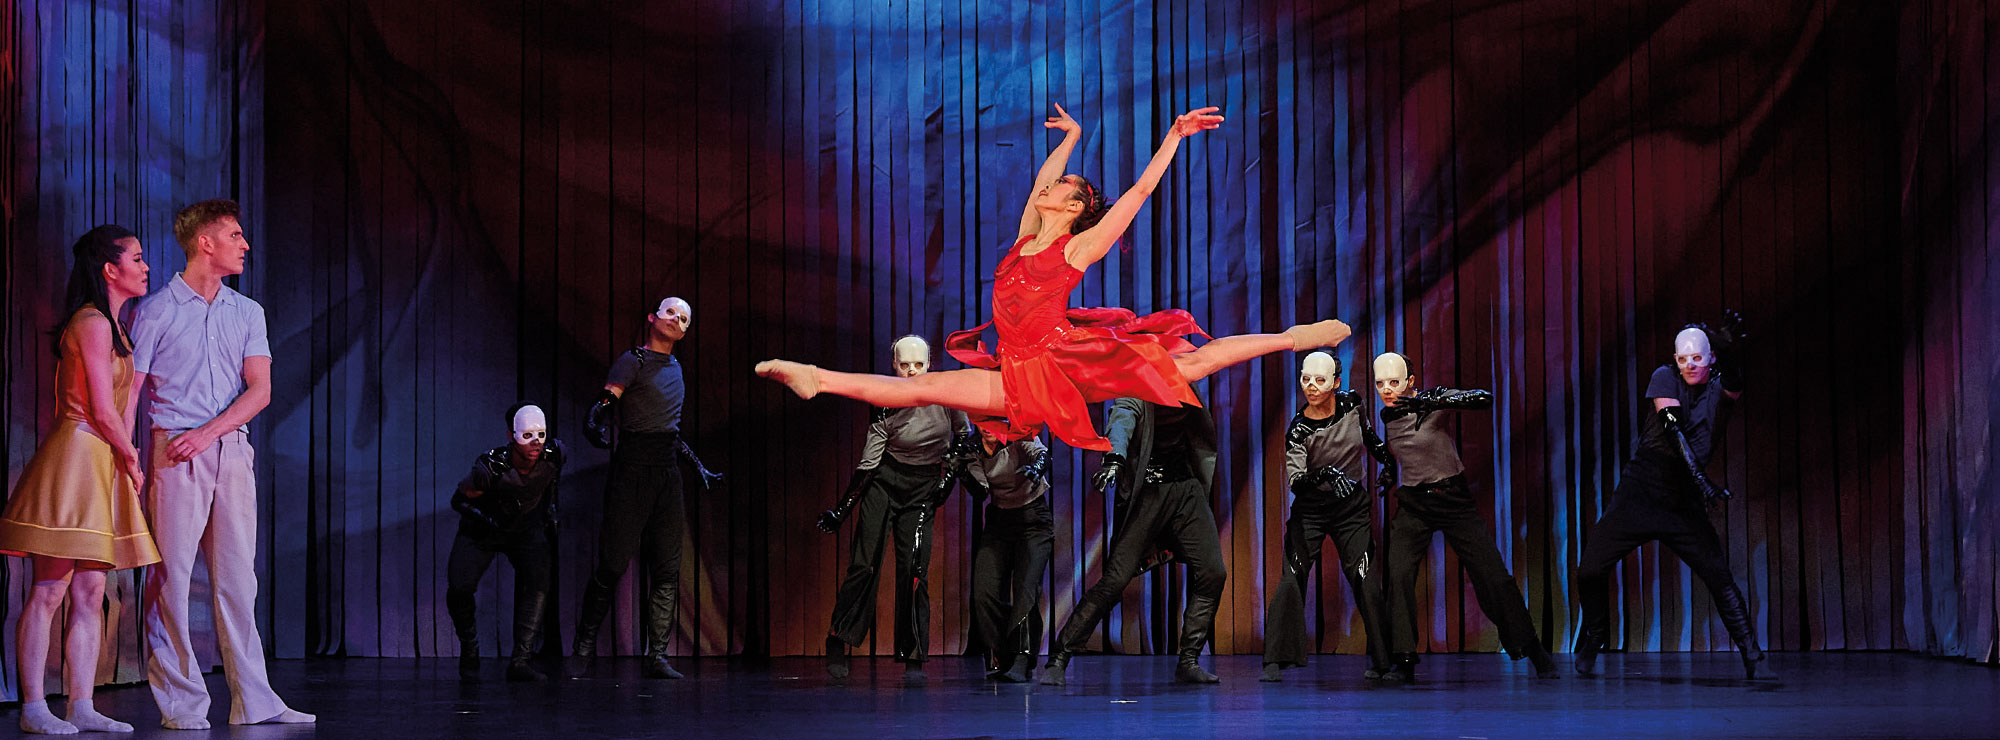 Aus DER FEUERVOGEL, Tänzerin in rotem Kleid, hinter ihr dunkle Gestalten, ein Paar steht links im Bild